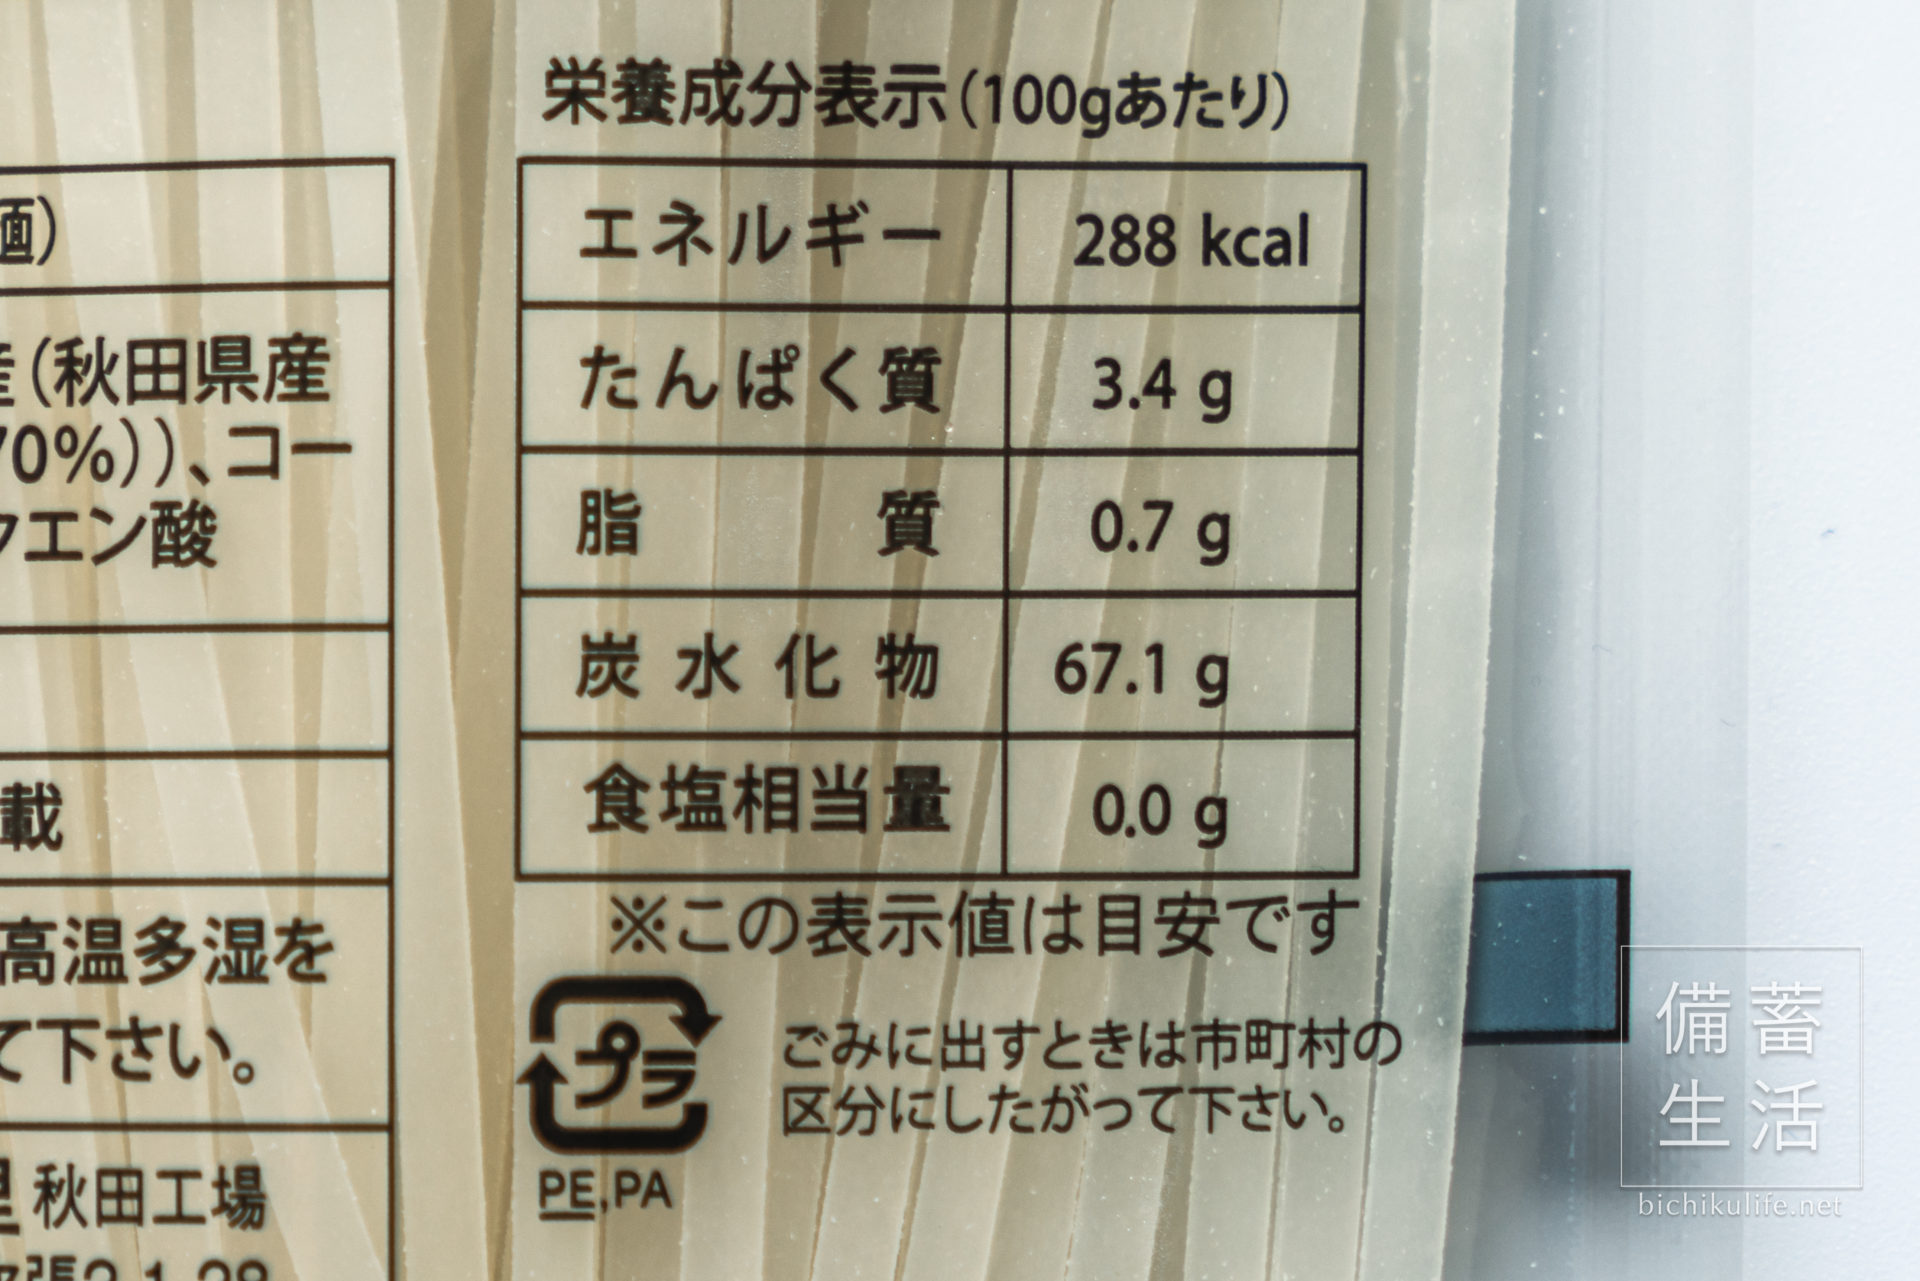 こまち麺 秋田県産あきたこまちを使用の半生麺の栄養成分表示